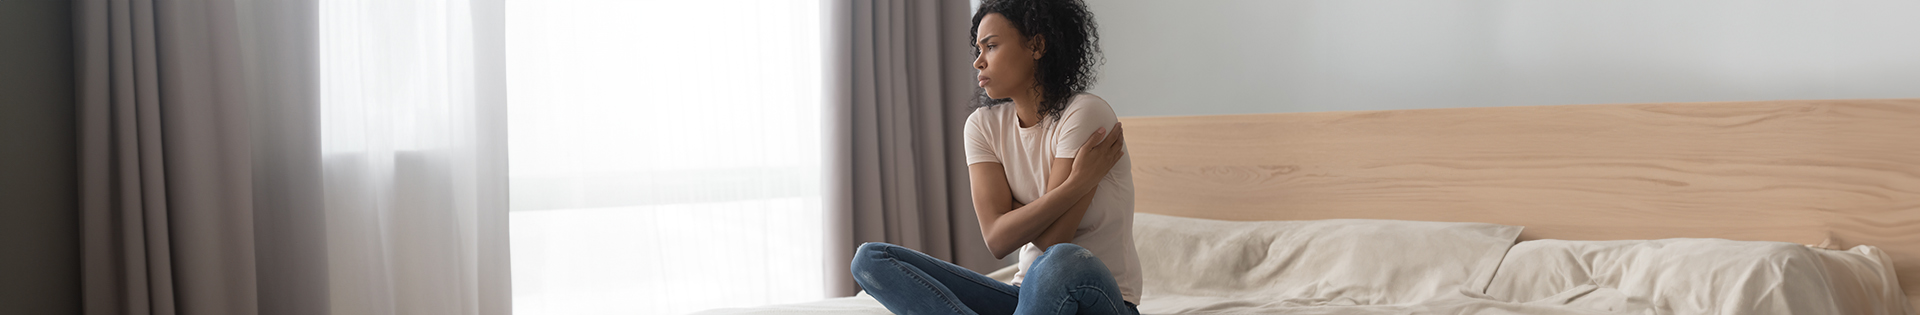 Menstruação retrógrada e endometriose: qual é a relação?